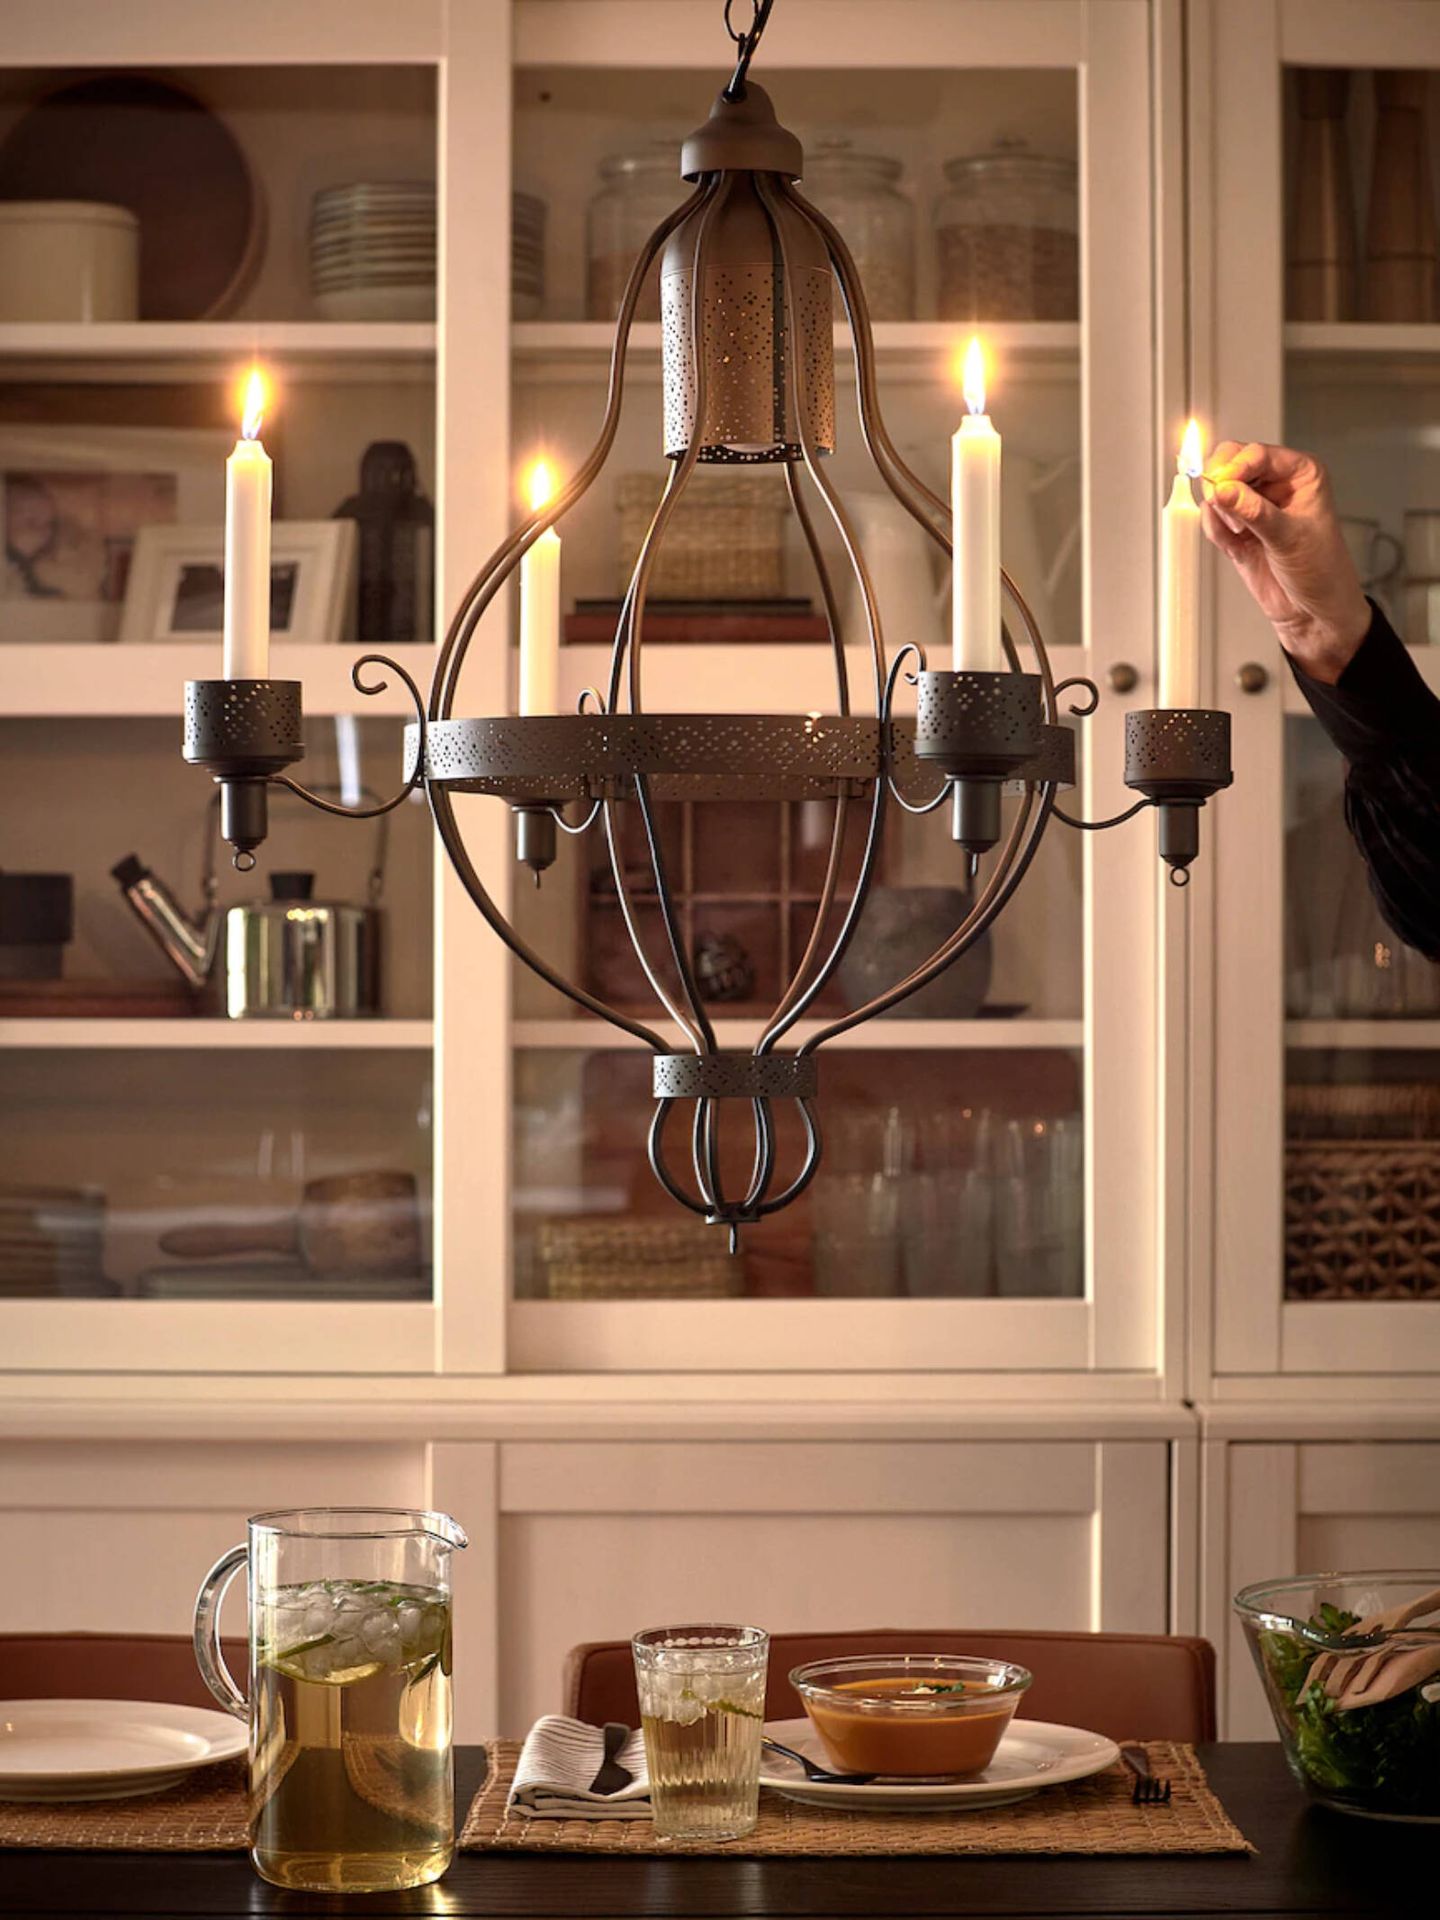 Lámparas de chandelier low cost para dar un toque chic a tu casa. (Cortesía/Ikea)